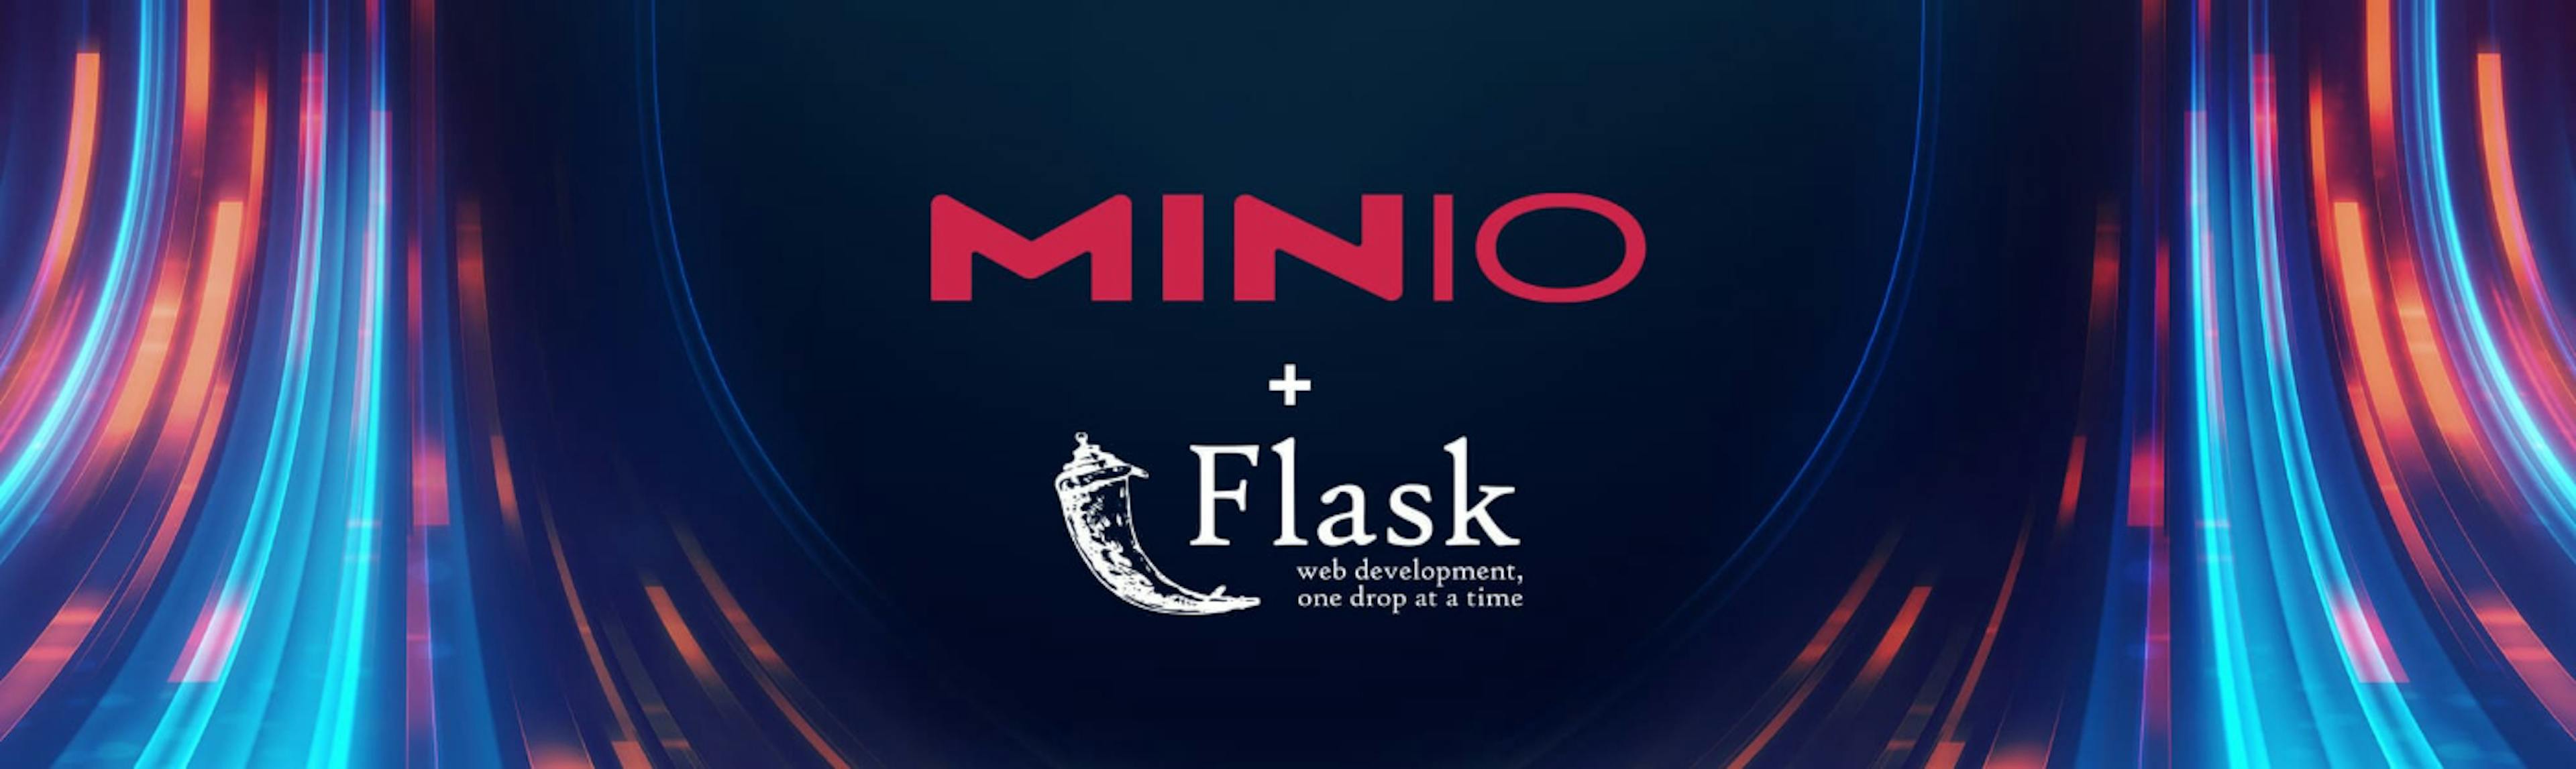 featured image - Verwenden von MinIO und Python zum Erstellen skalierbarer und effizienter ereignisgesteuerter Anwendungen